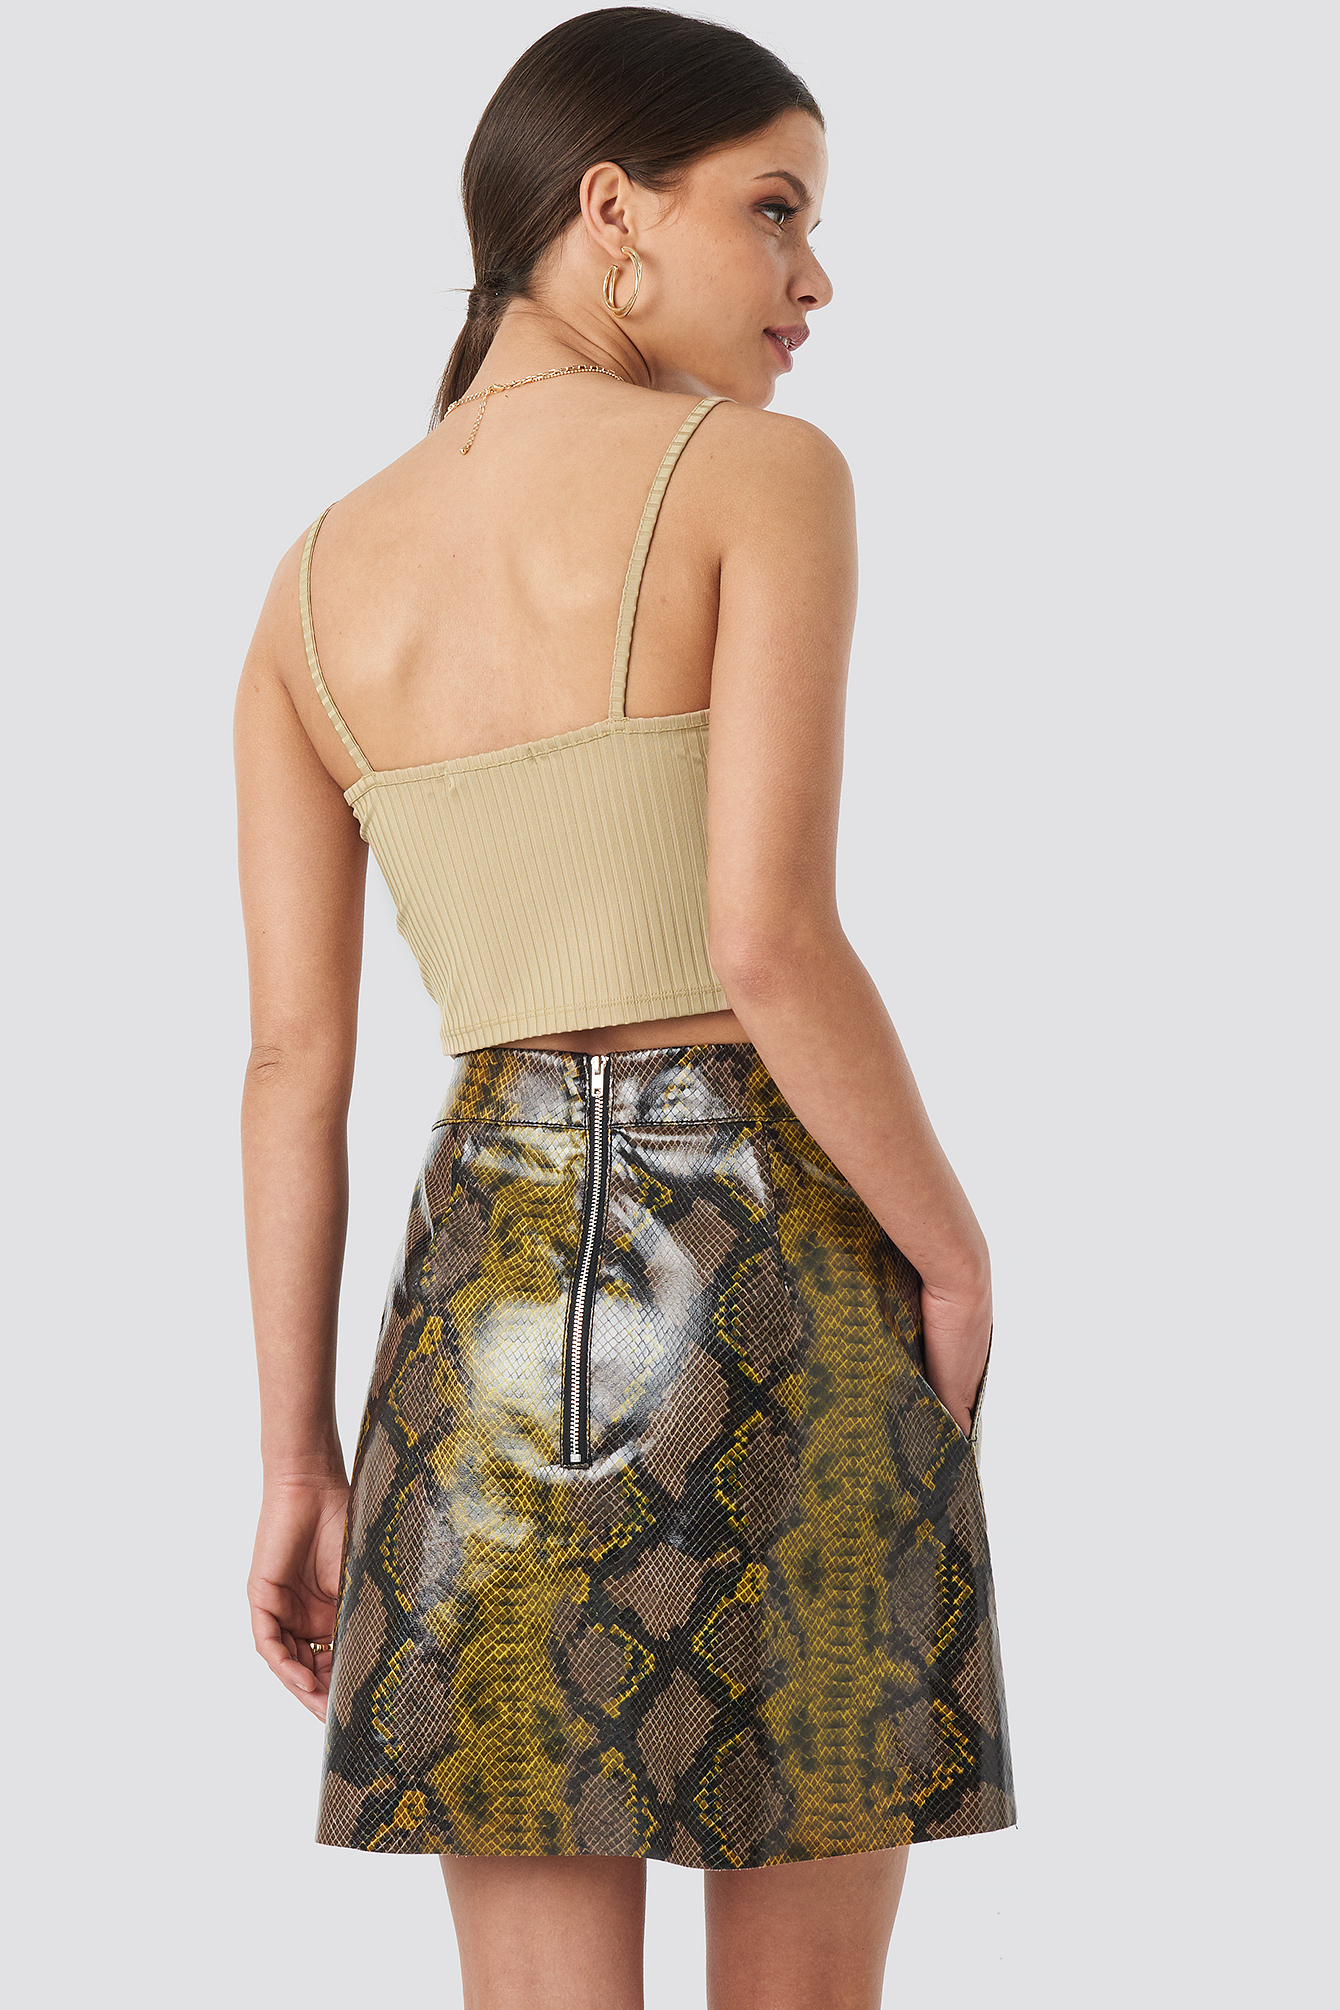 gold snakeskin skirt